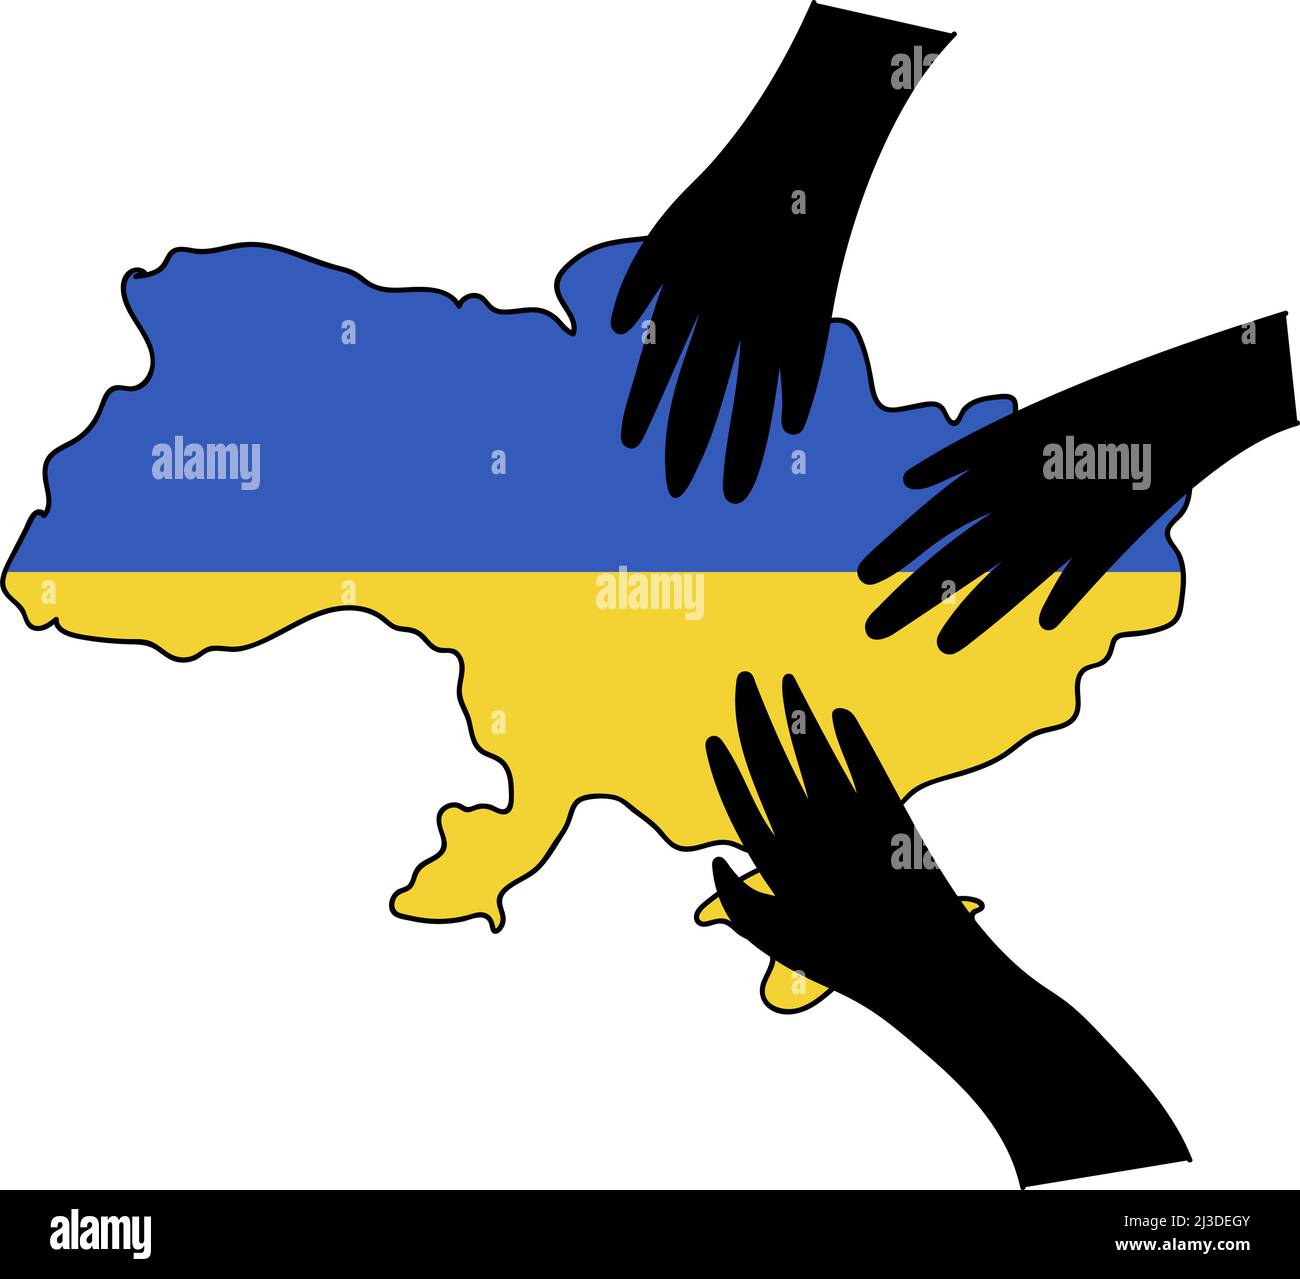 Stop war in Ukraine Konzept Vektor-Illustration. Russische Hände auf ukrainischer Landkarte. Abbildung der ukrainischen Flagge. Rette die Ukraine vor Russland. Stock Vektor